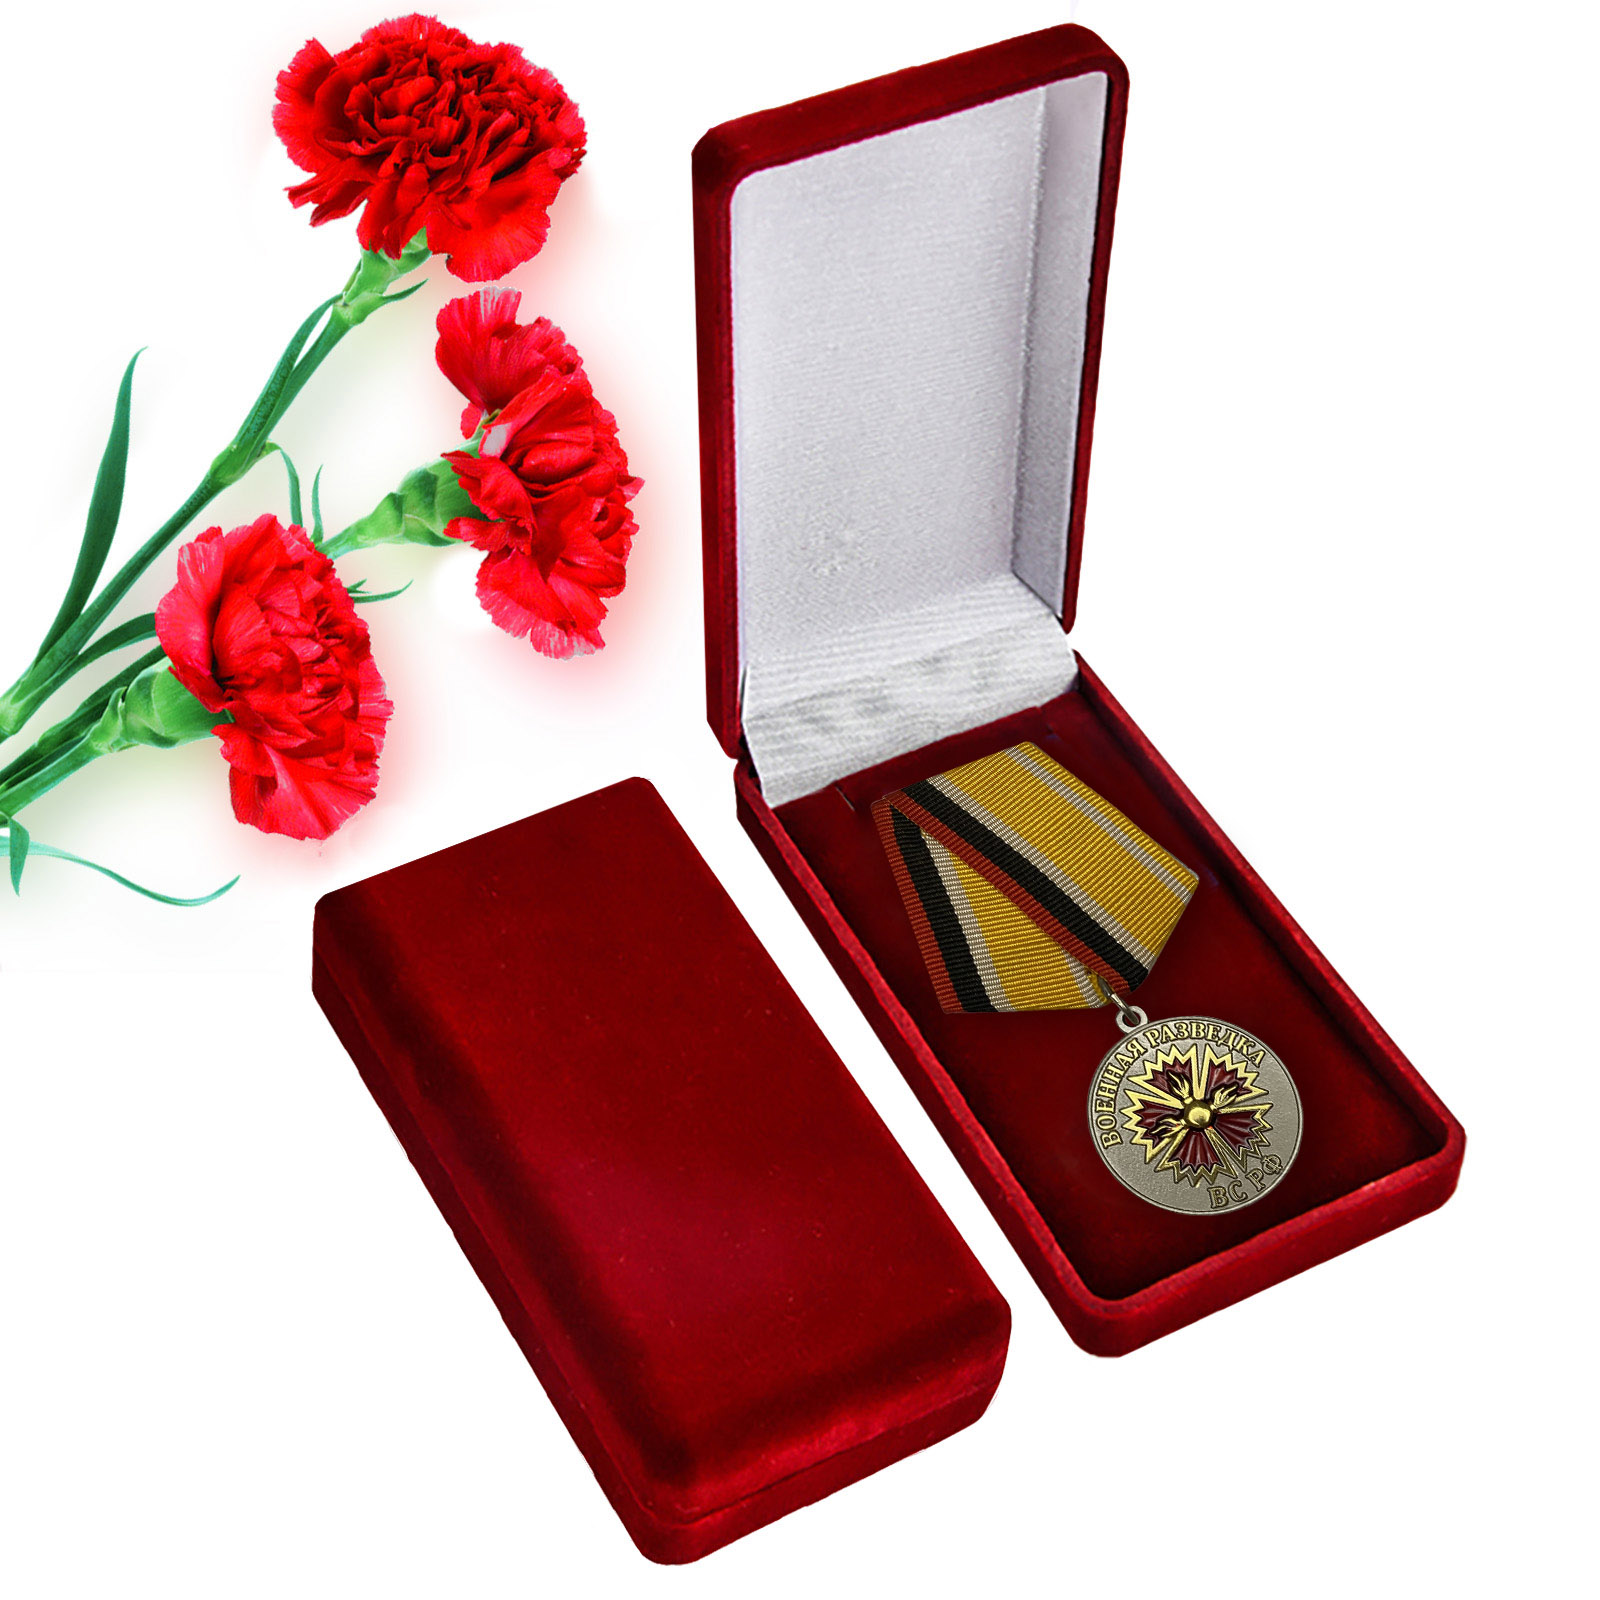 Медаль "Военная разведка" для ветеранов